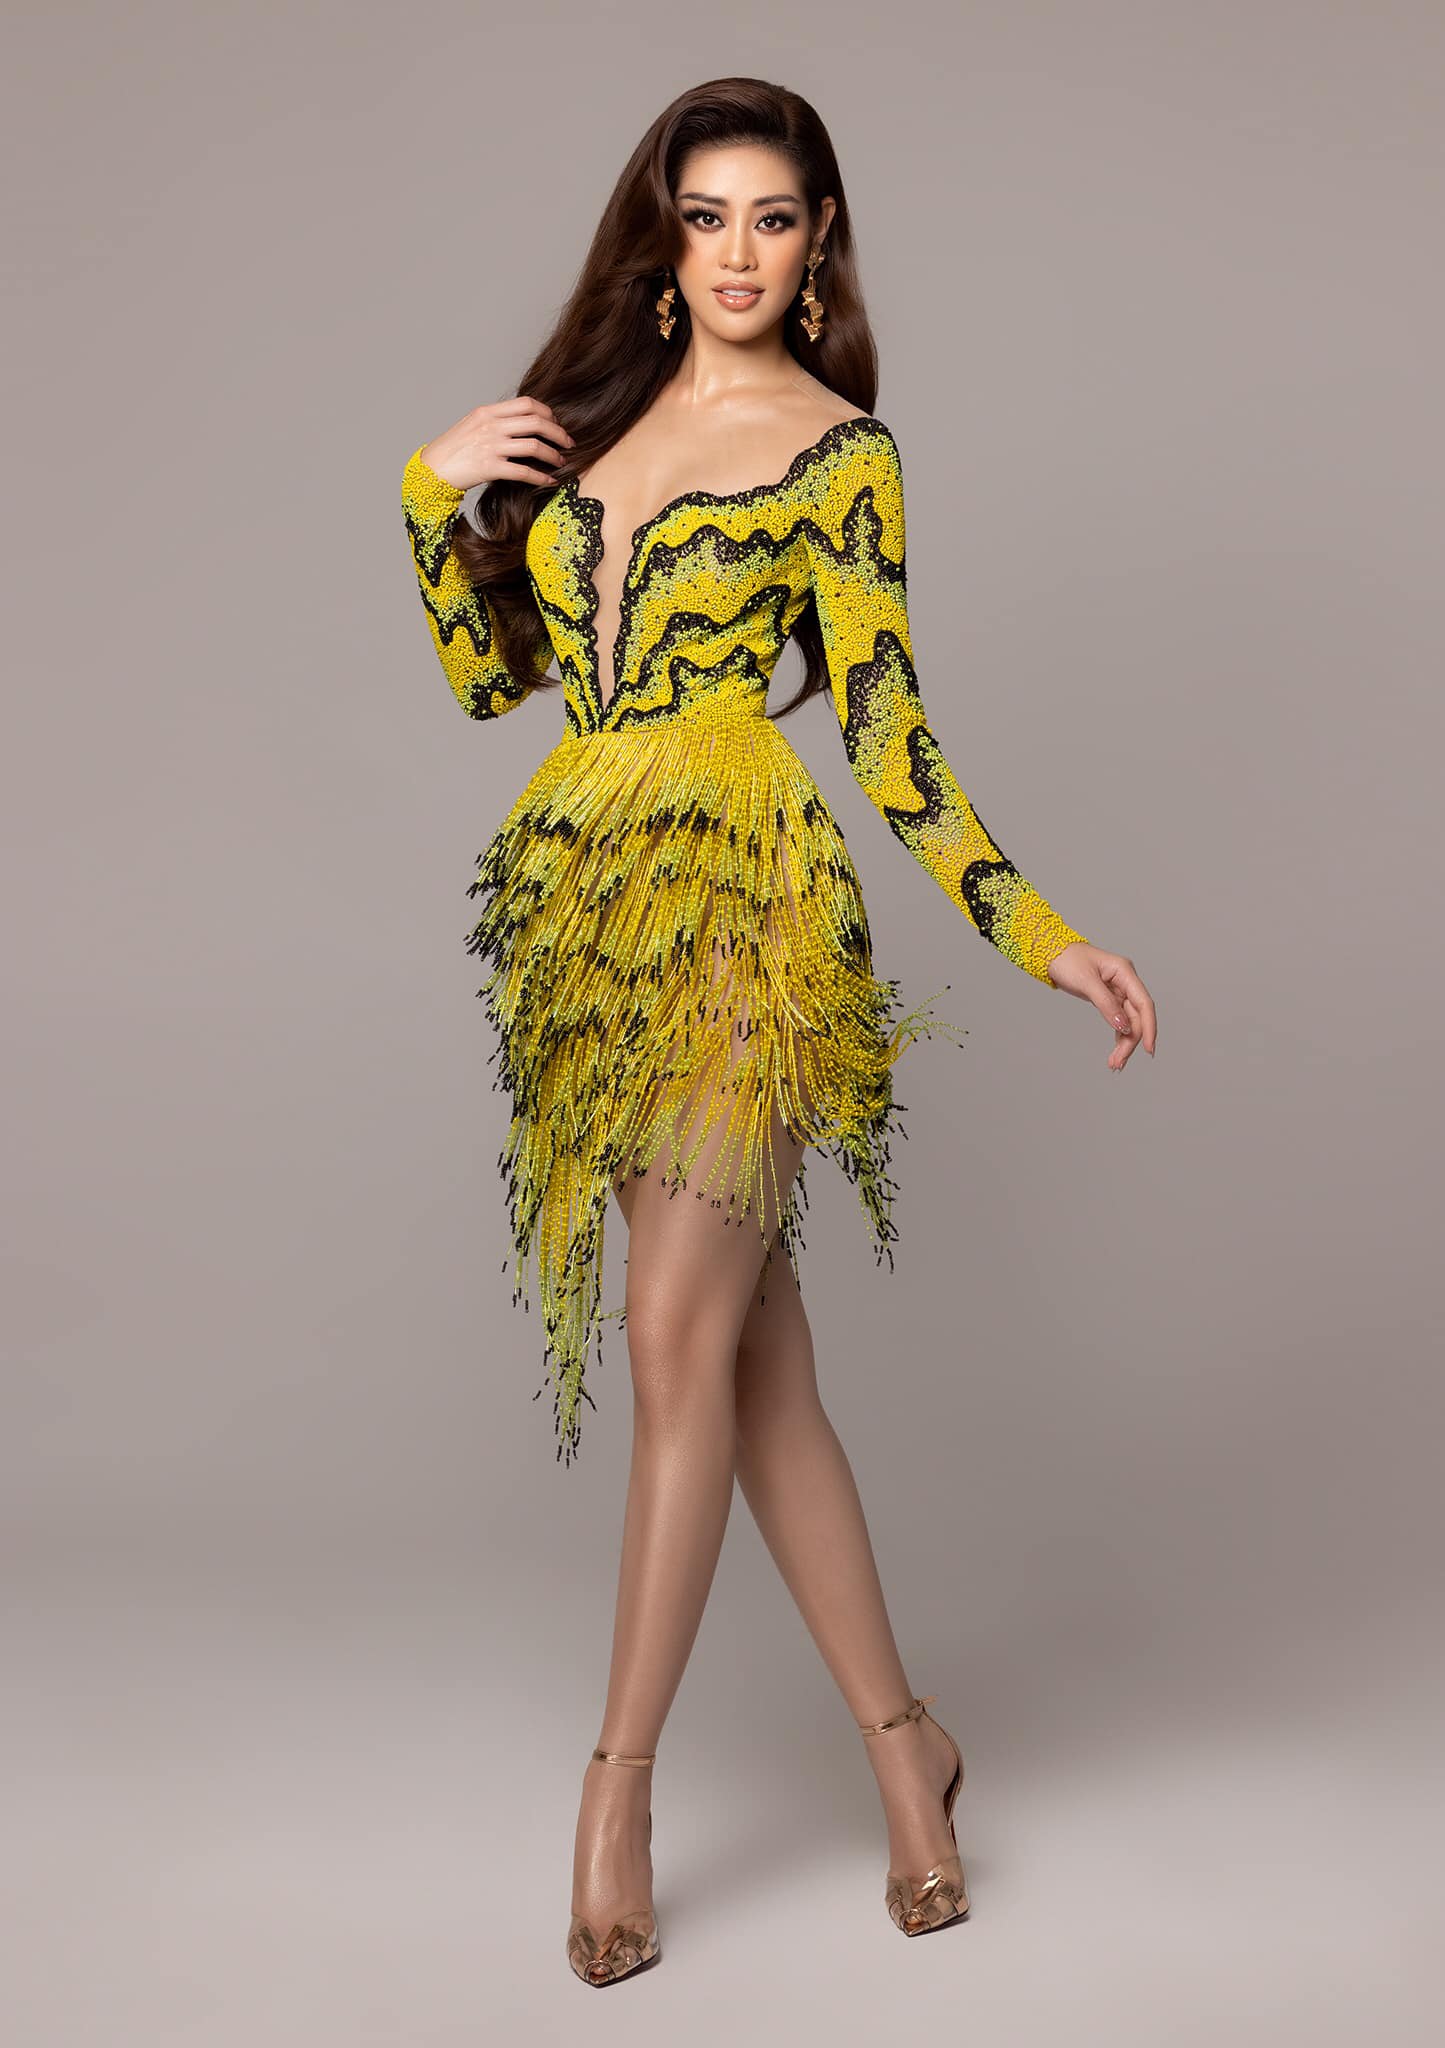 Ngày thứ 6 của Khánh Vân tại Miss Universe: Kiêu sa trong thiết kế ruộng bậc thang, tung bộ ảnh dạ hội đẹp đến 'nao lòng' 6